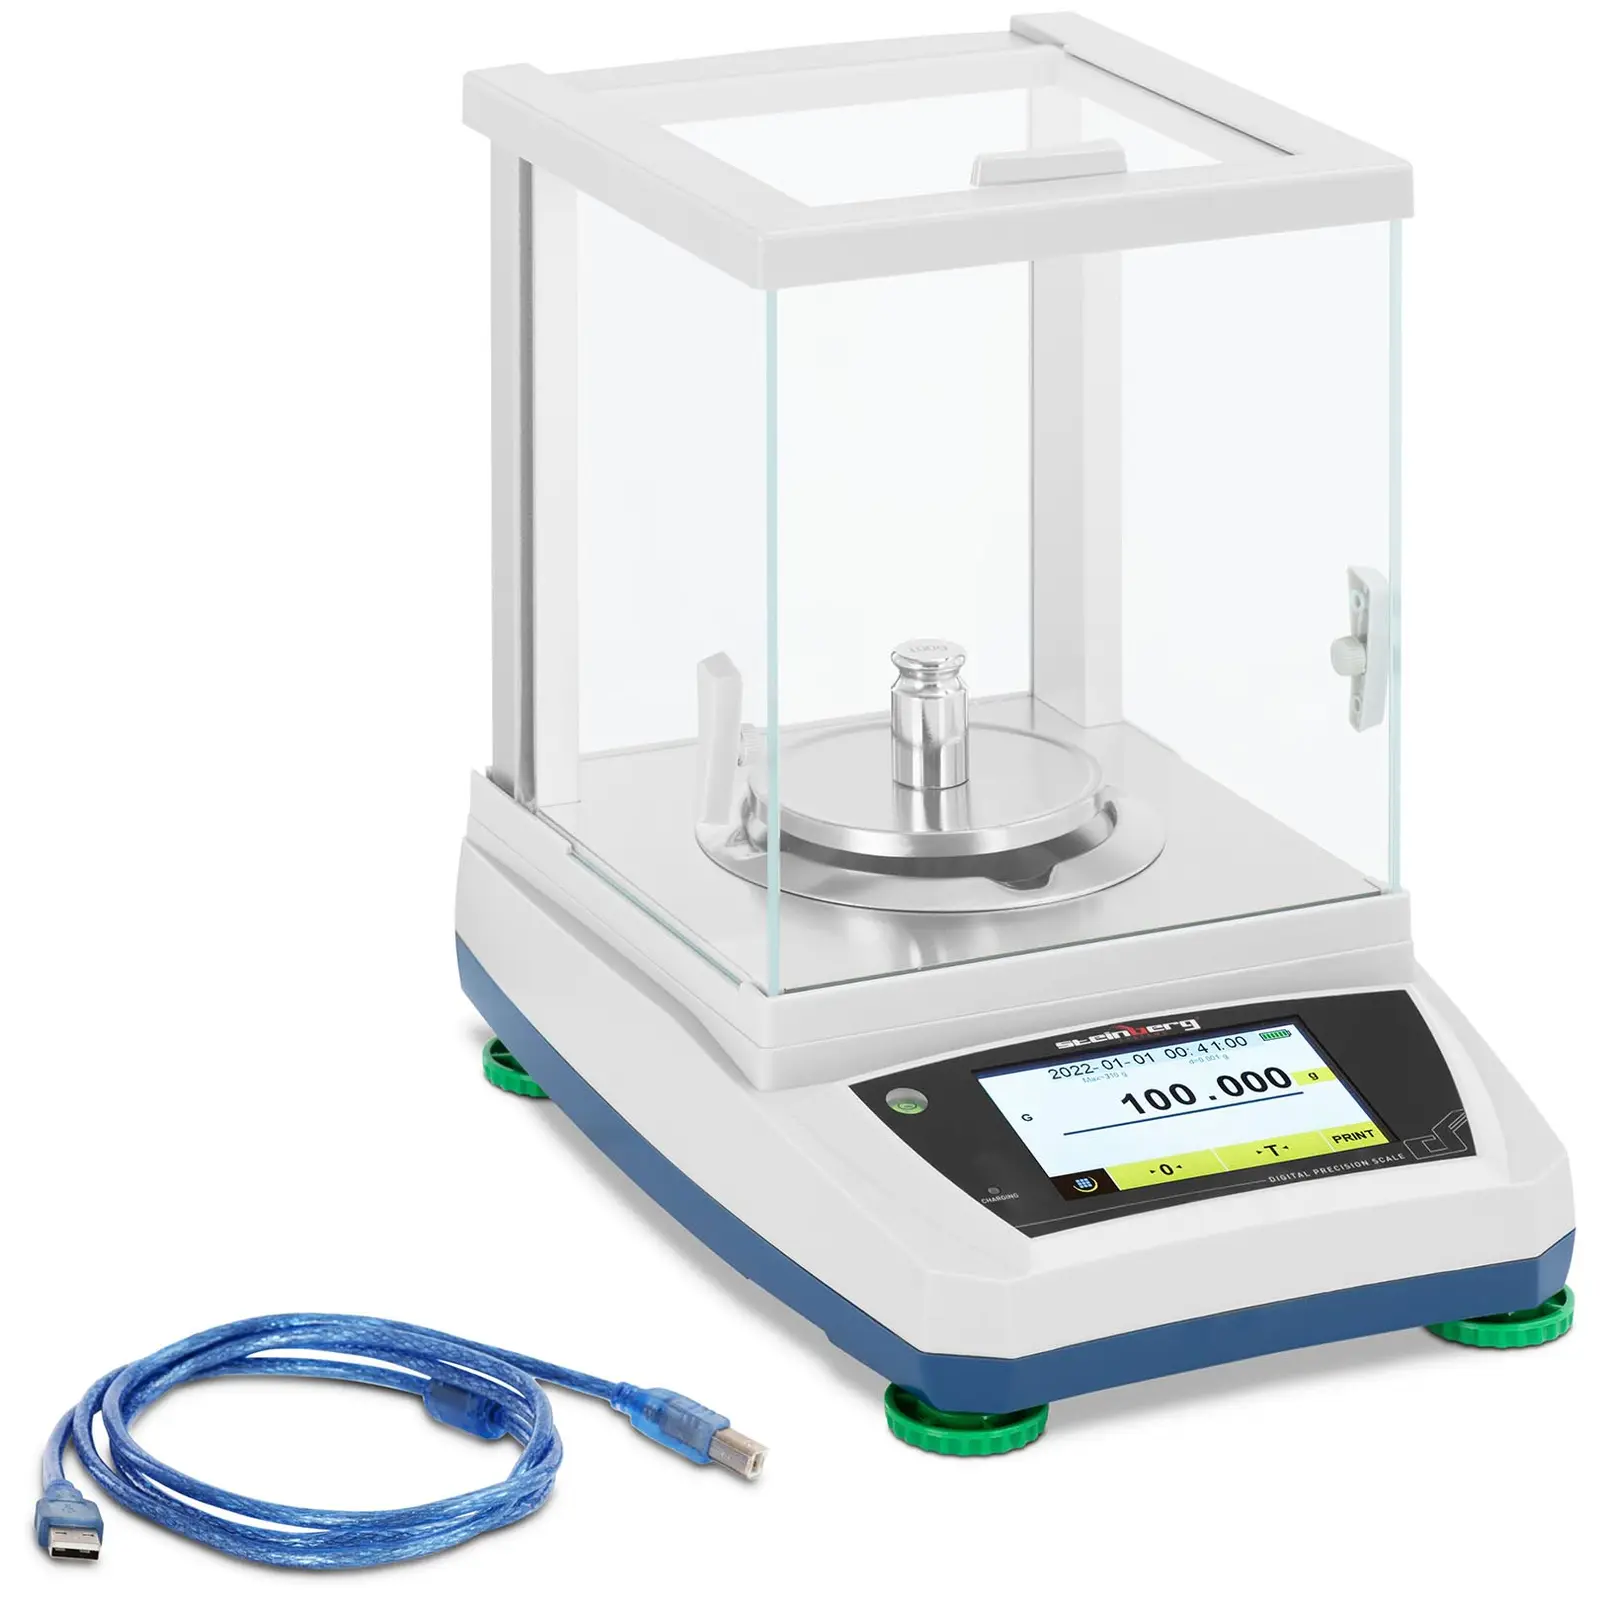 Balança de laboratório - 300 g / 0,001 g - Ø98 mm - painel táctil LCD - bateria recarregável - cobertura de vidro contra fatores externos